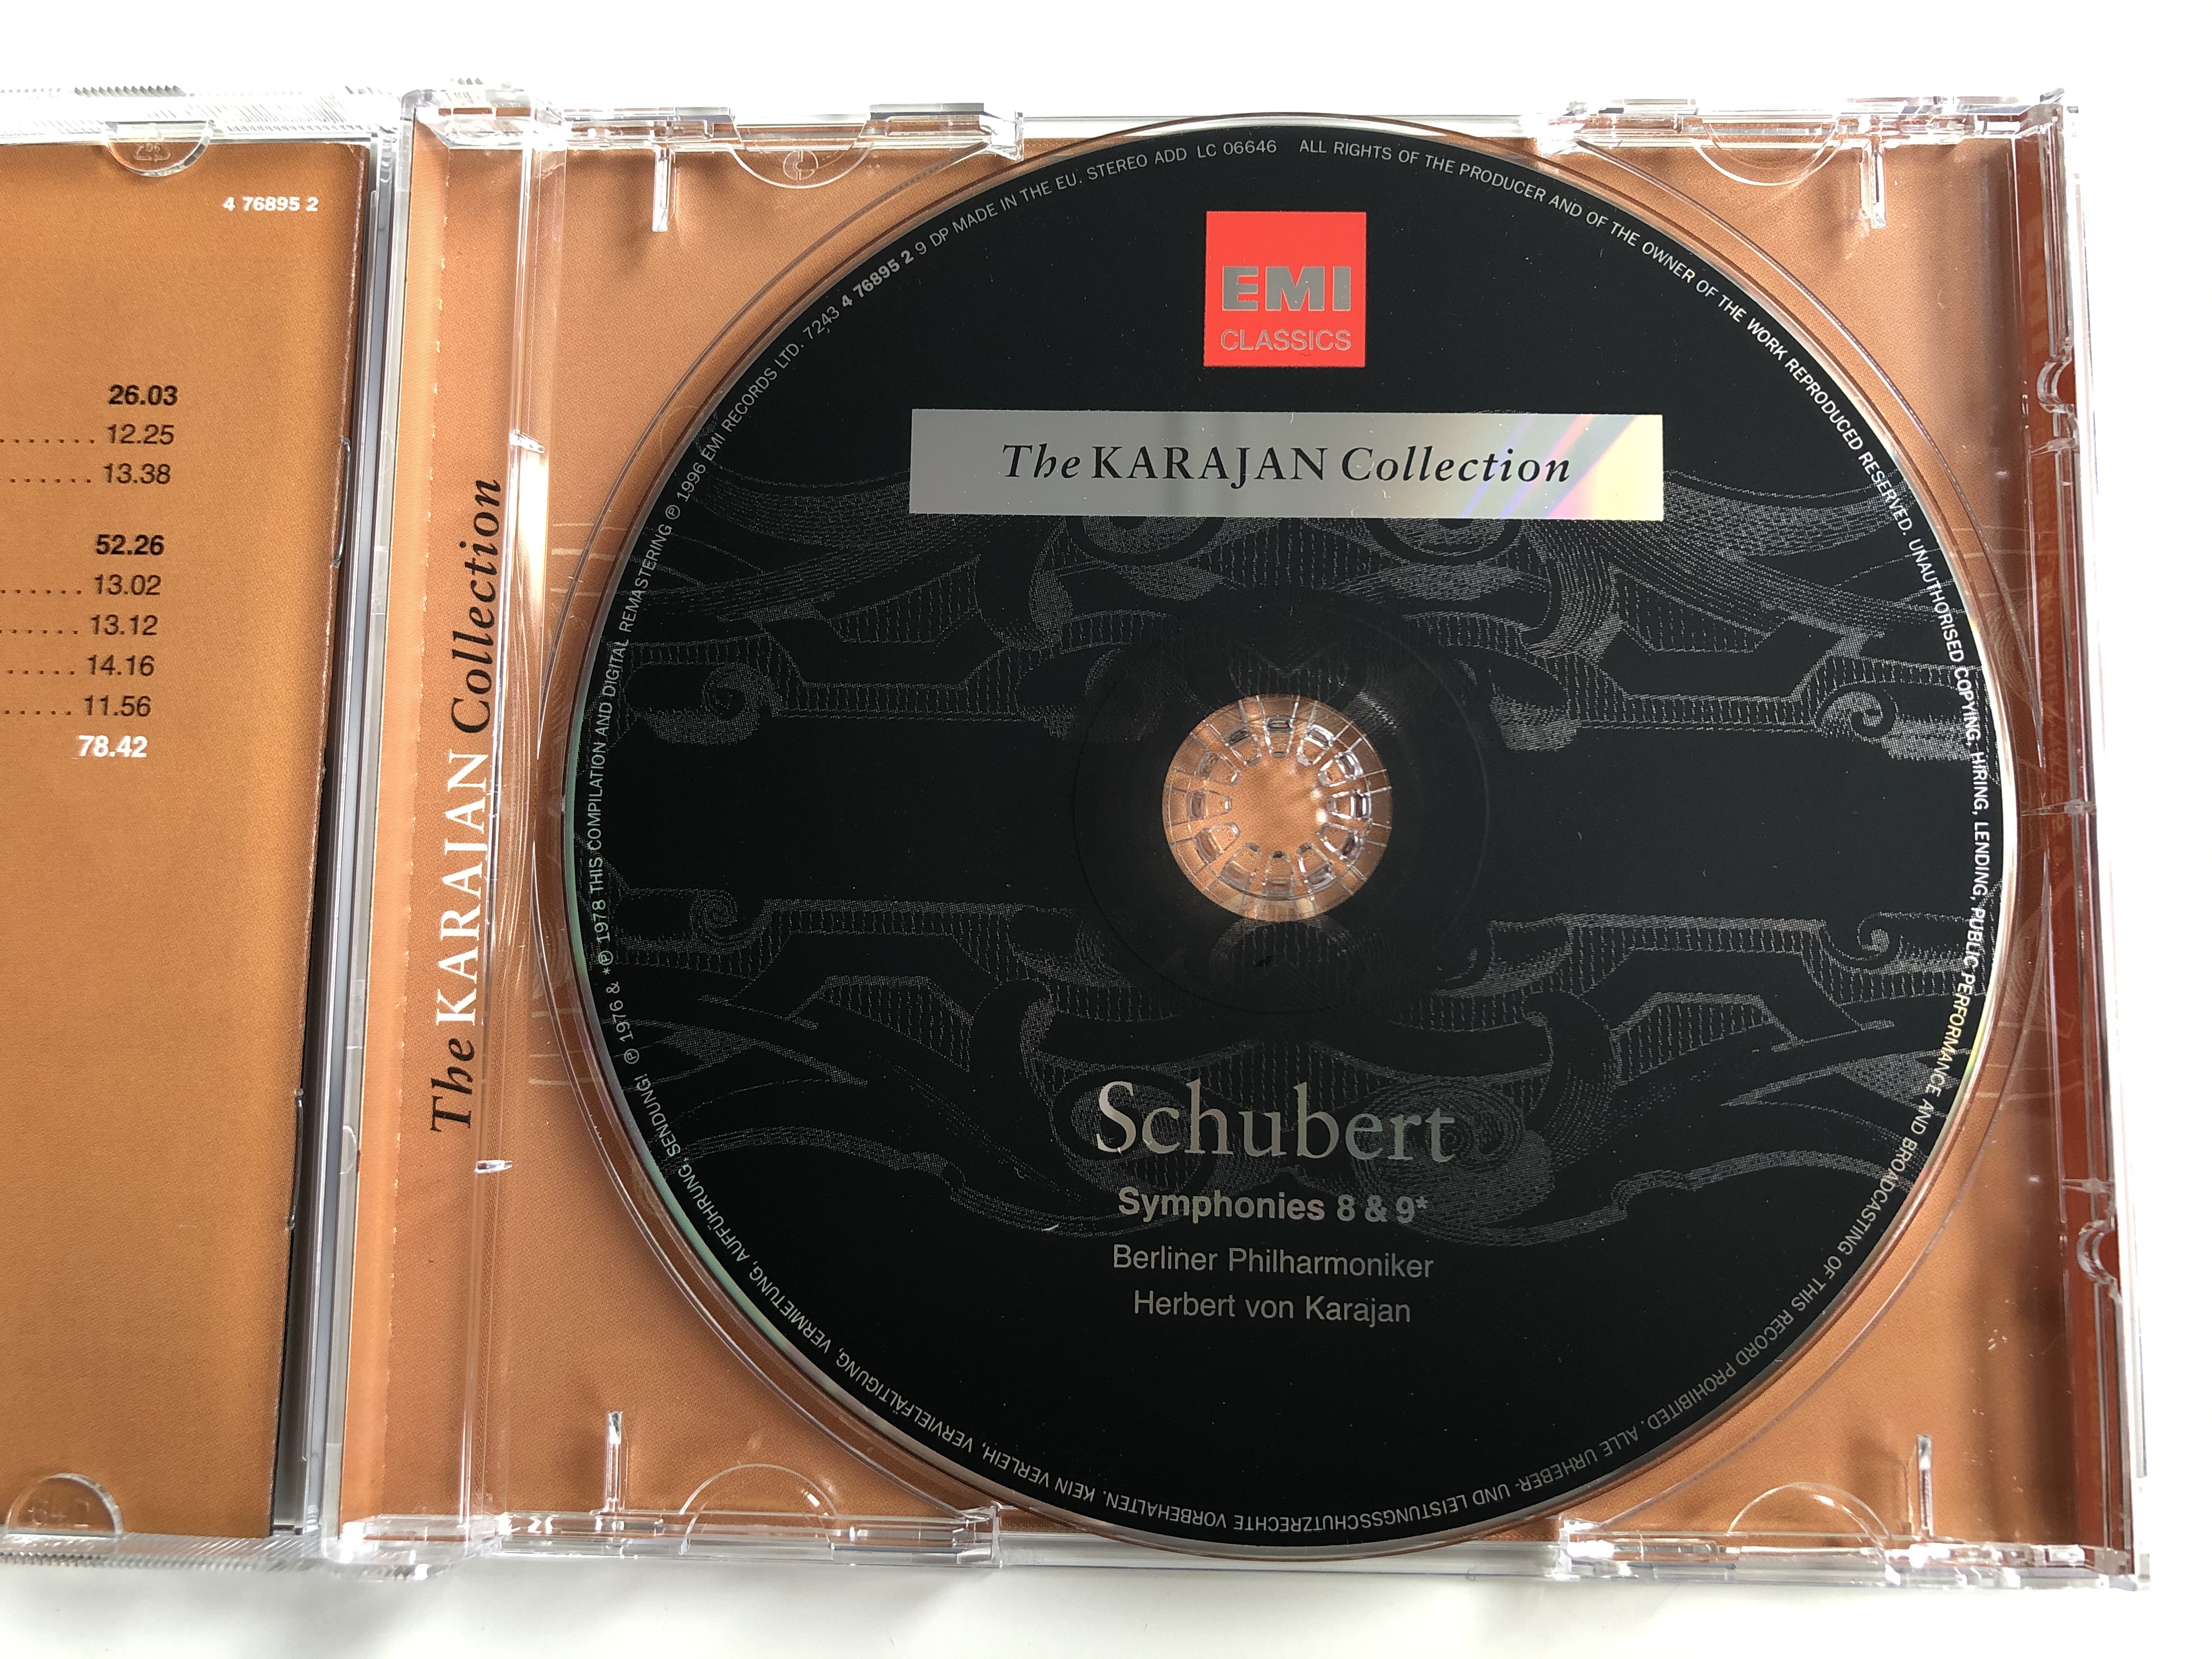 the-karajan-collection-schubert-symphonies-8-9-berliner-philharmoniker-herbert-von-karajan-emi-classics-audio-cd-stereo-7243-4-76895-2-9-6-.jpg